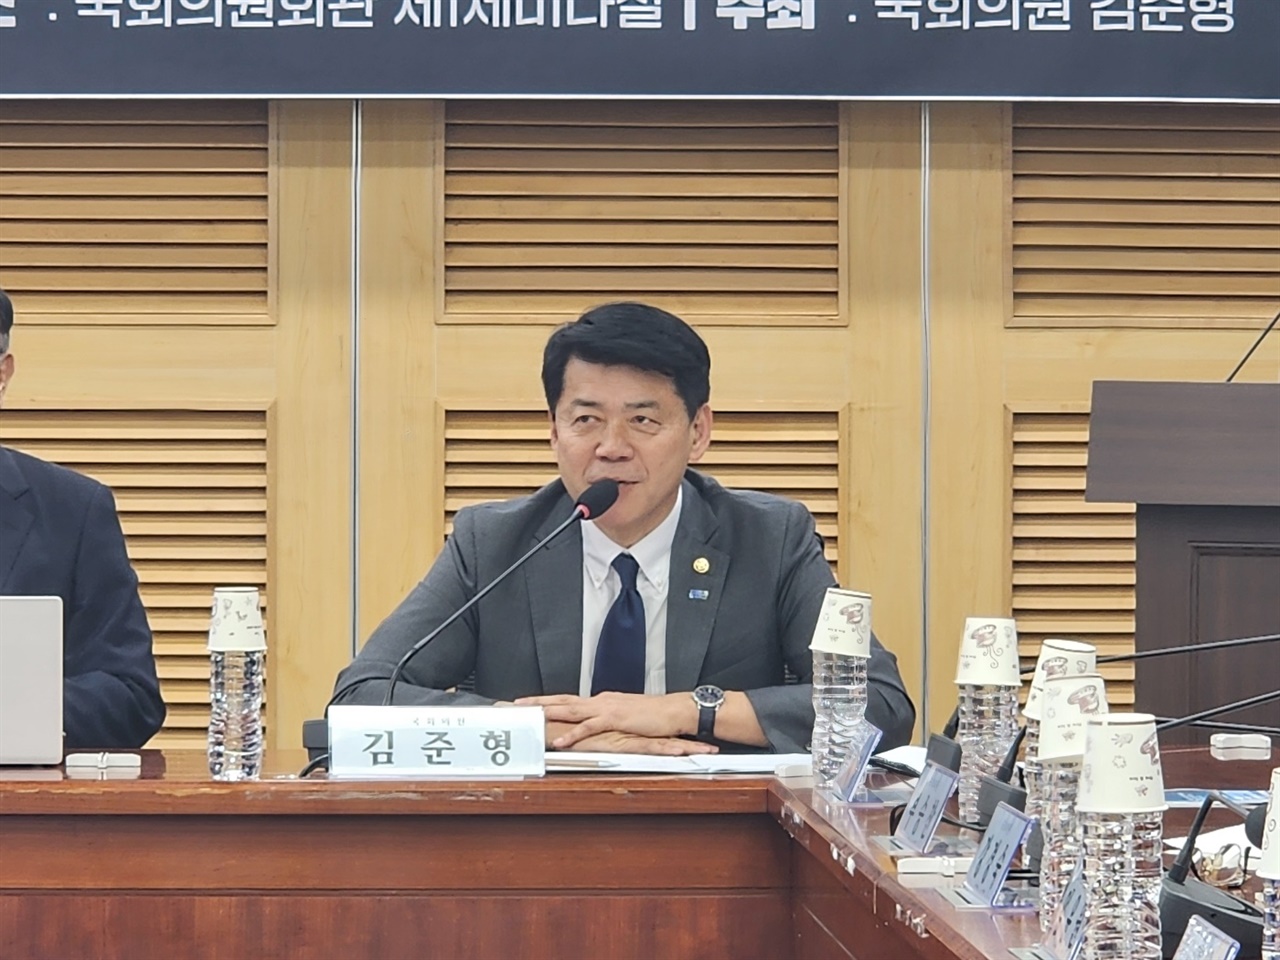  '한반도 분단 구조의 극복을 위하여' 주제의 토론회에서 김준형 국회의원이 주제발표를 하고 있다.